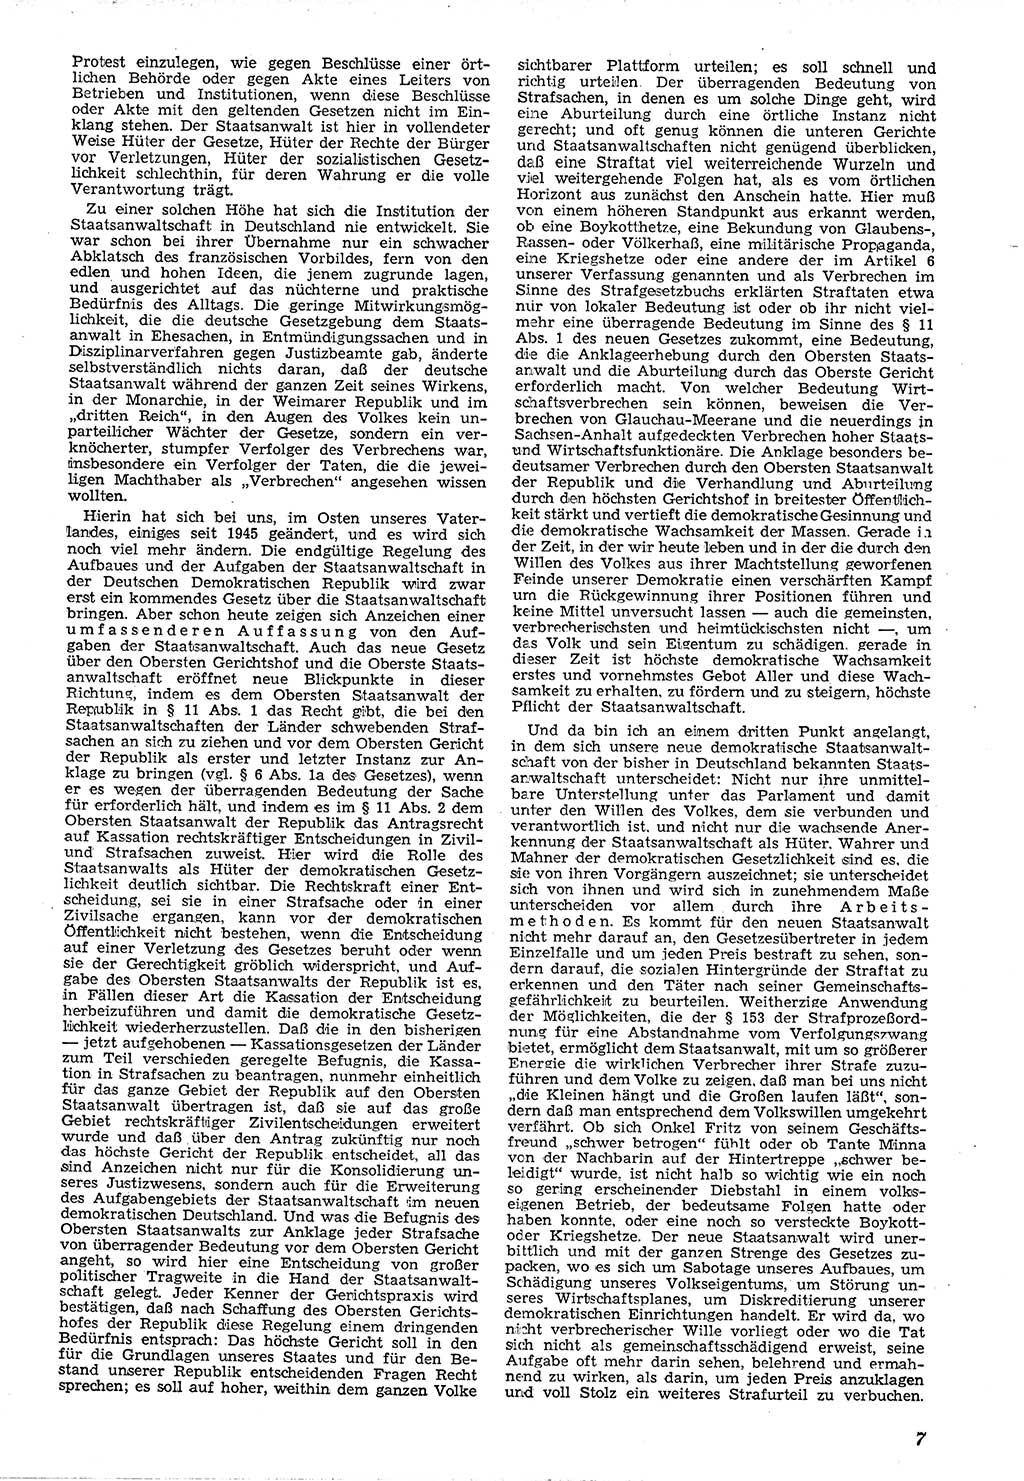 Neue Justiz (NJ), Zeitschrift für Recht und Rechtswissenschaft [Deutsche Demokratische Republik (DDR)], 4. Jahrgang 1950, Seite 7 (NJ DDR 1950, S. 7)